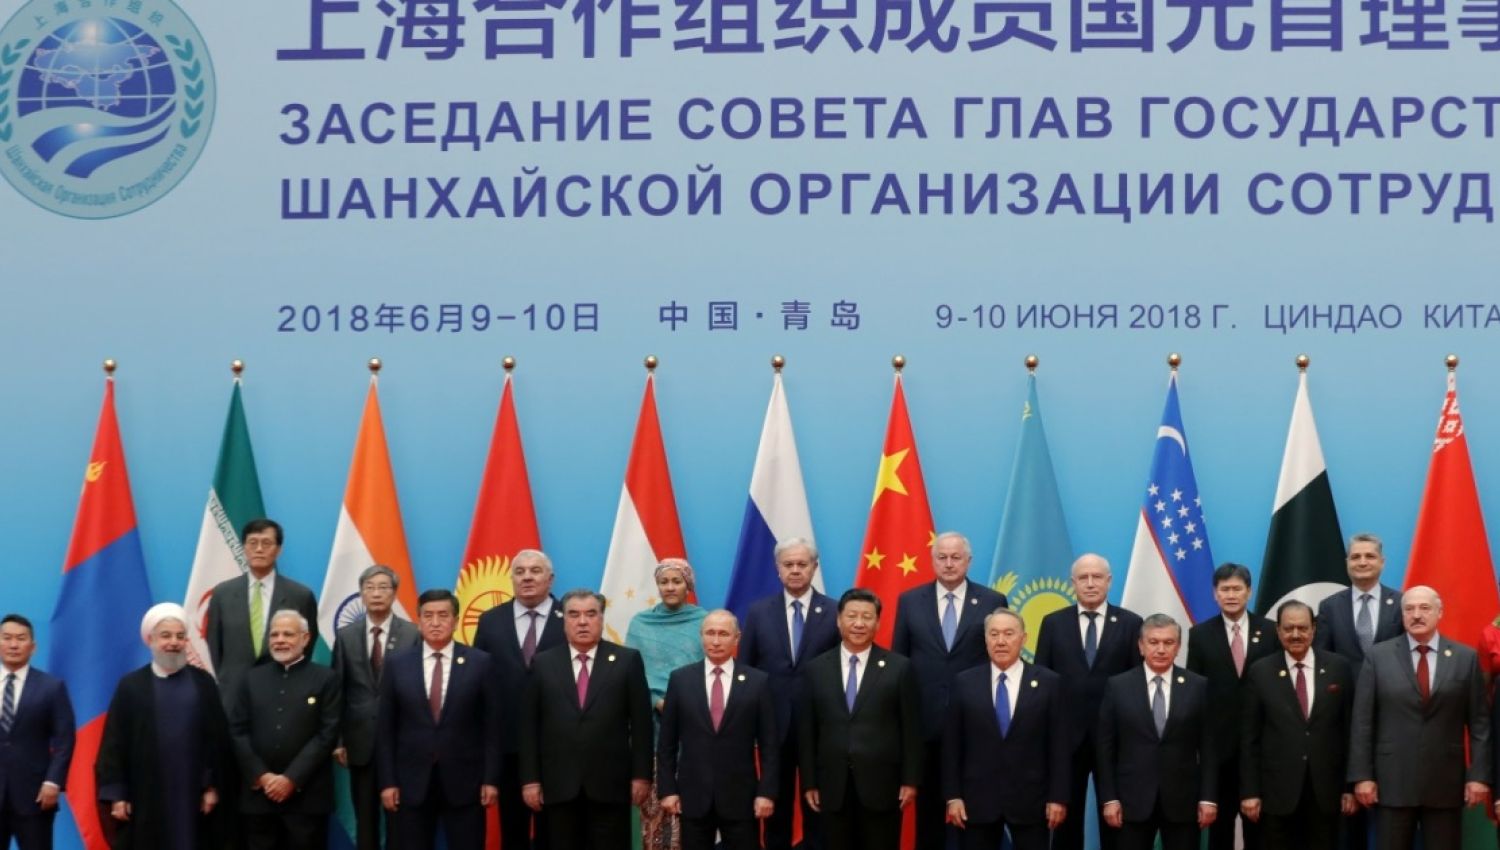 ايران روسيا والصين:حل العقدة النووية وتراجع النفوذ الاميركي